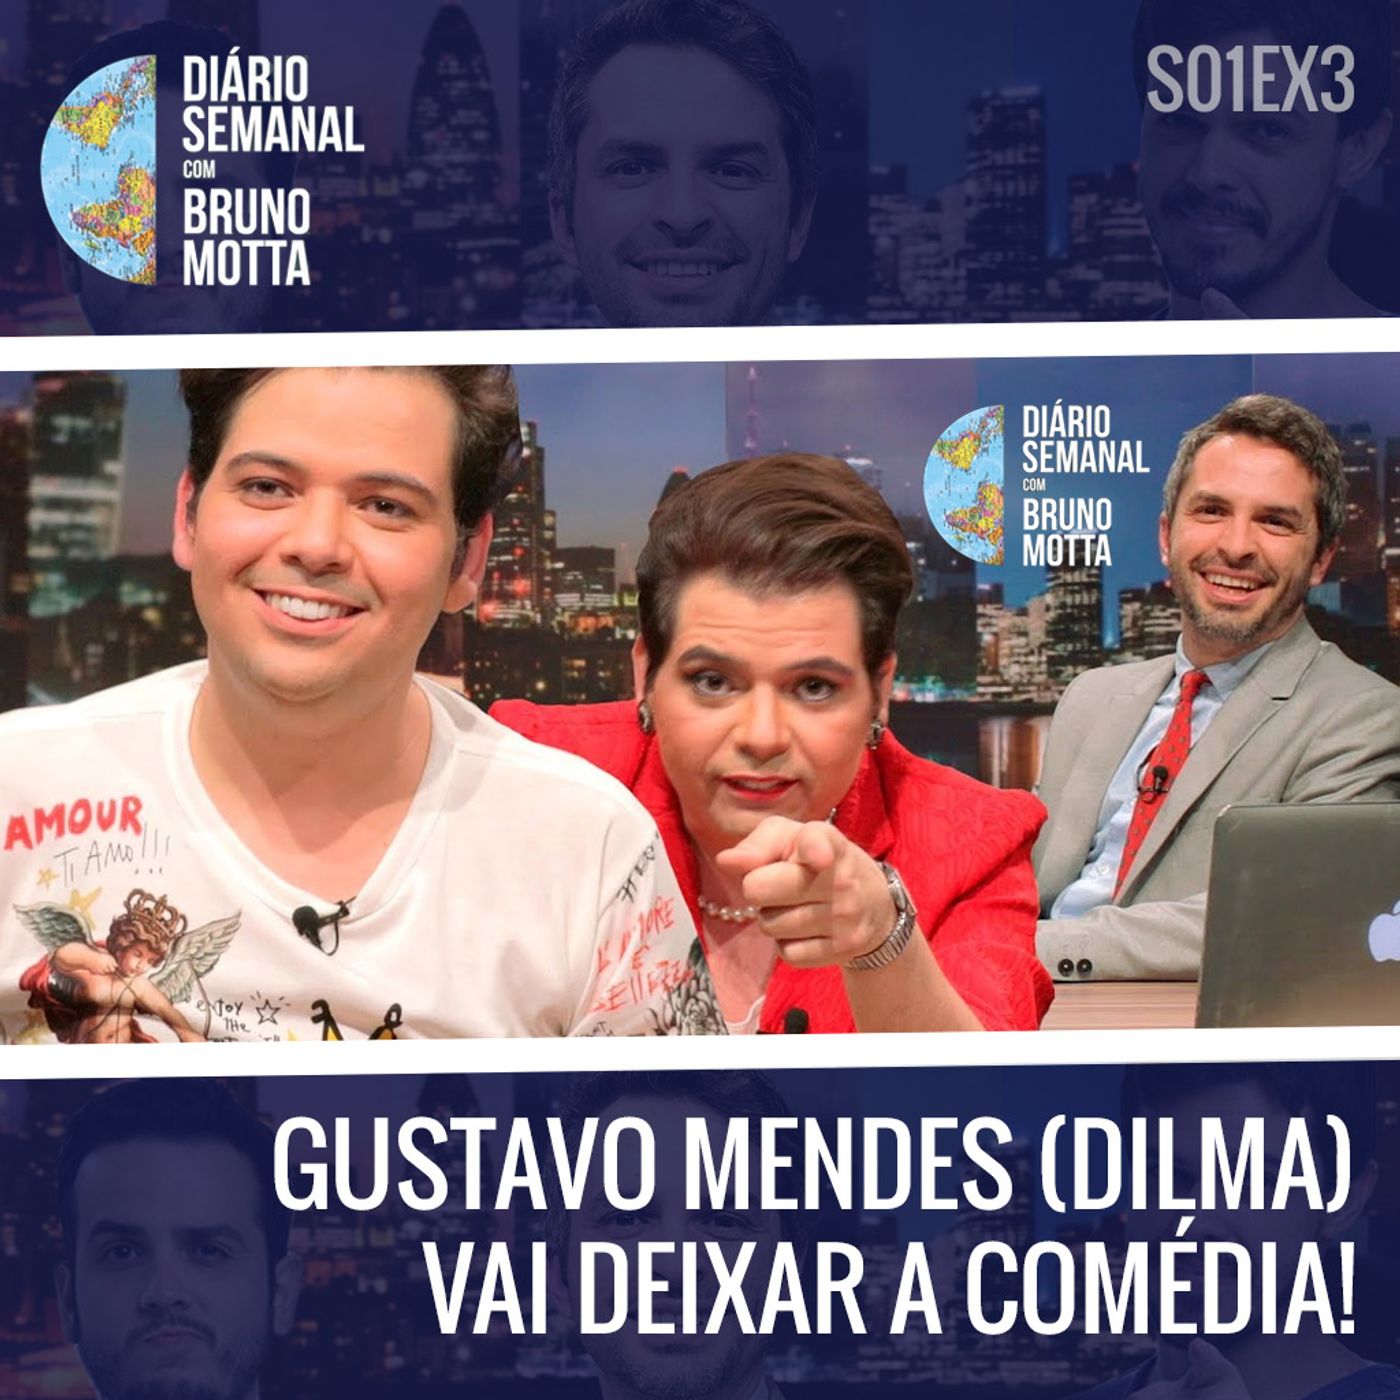 DS_S01EX3 - ESPECIAL DE FÉRIAS - Gustavo Mendes vai deixar a comédia